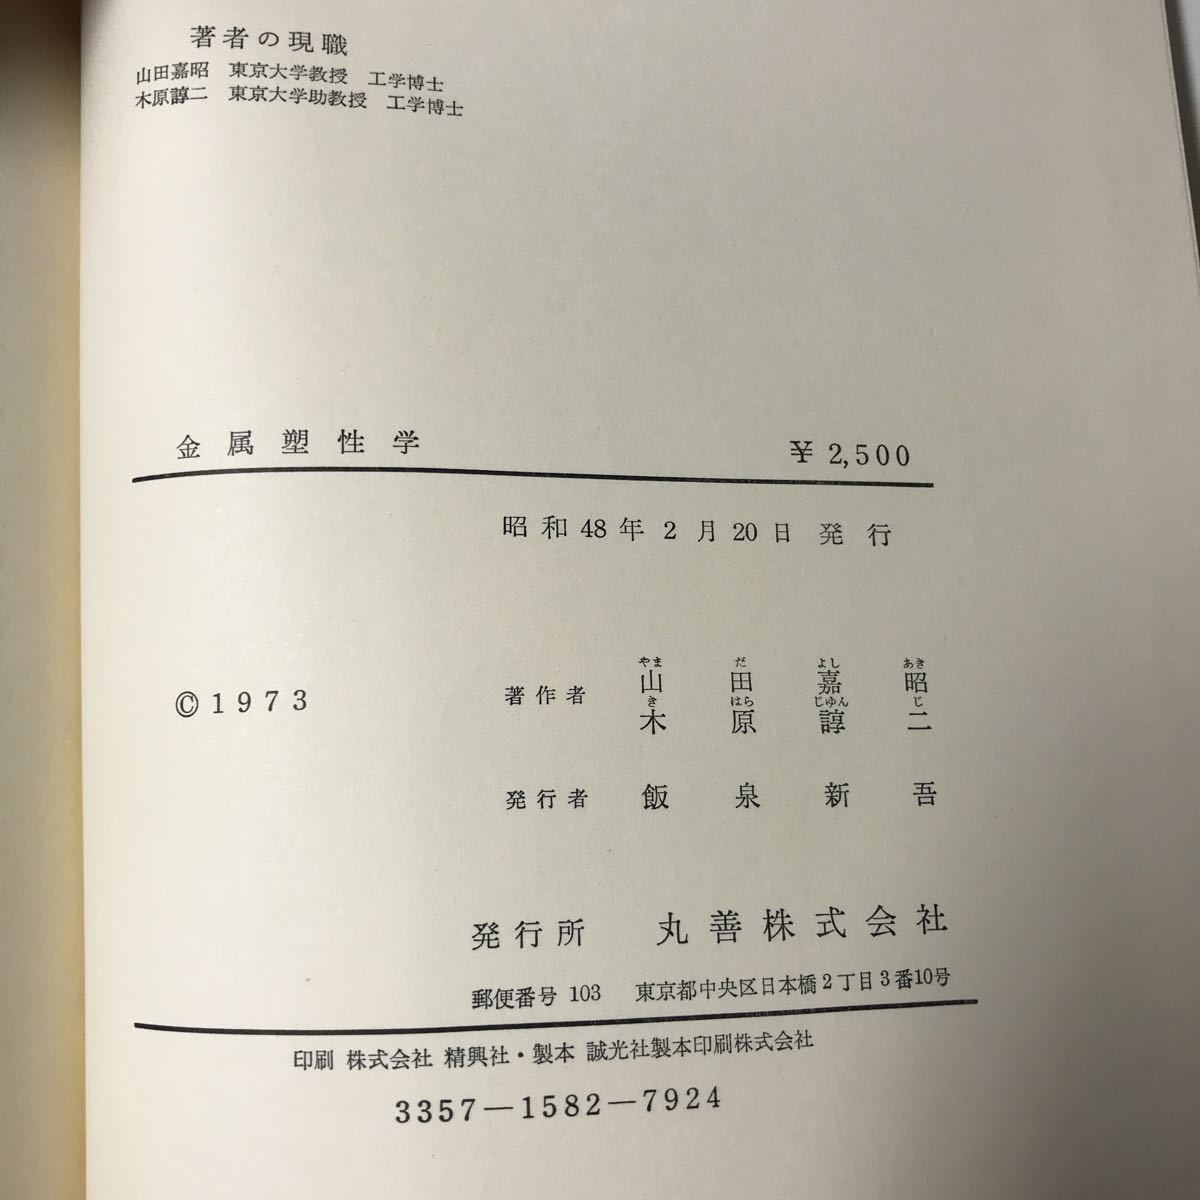 220916*P19* металл ... металлургия стандарт учебник гора рисовое поле .. Showa 48 год выпуск круг . акционерное общество 